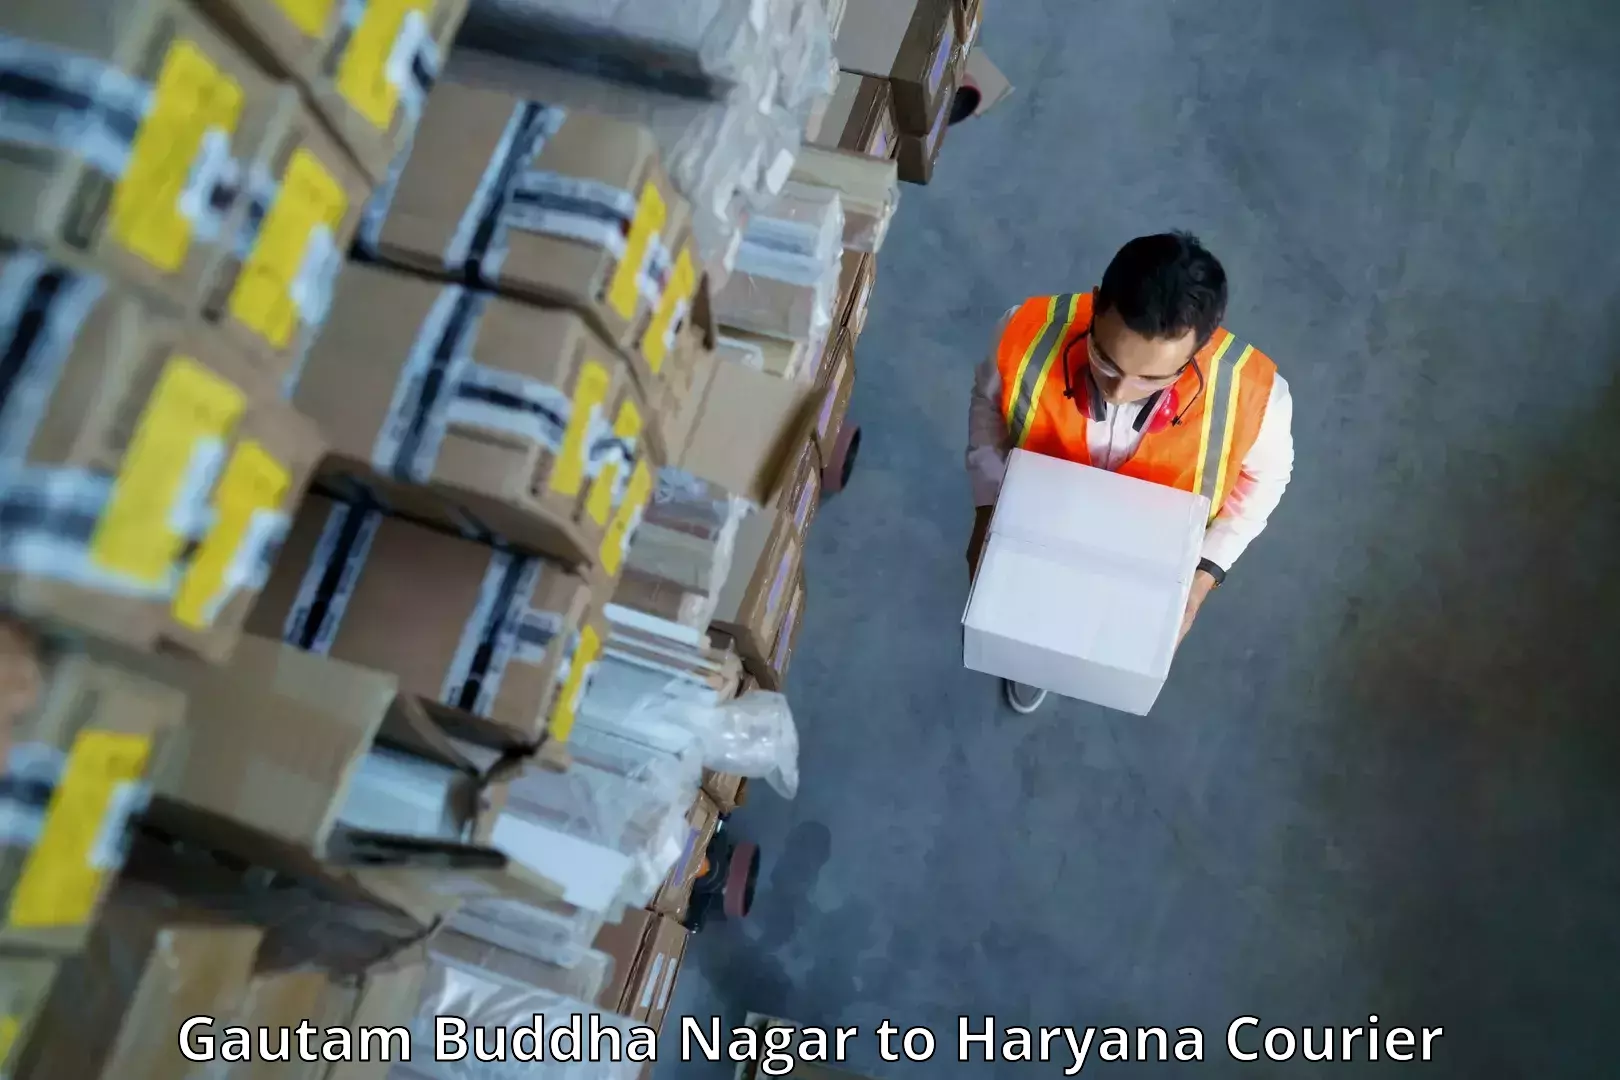 Smart shipping technology Gautam Buddha Nagar to Haryana